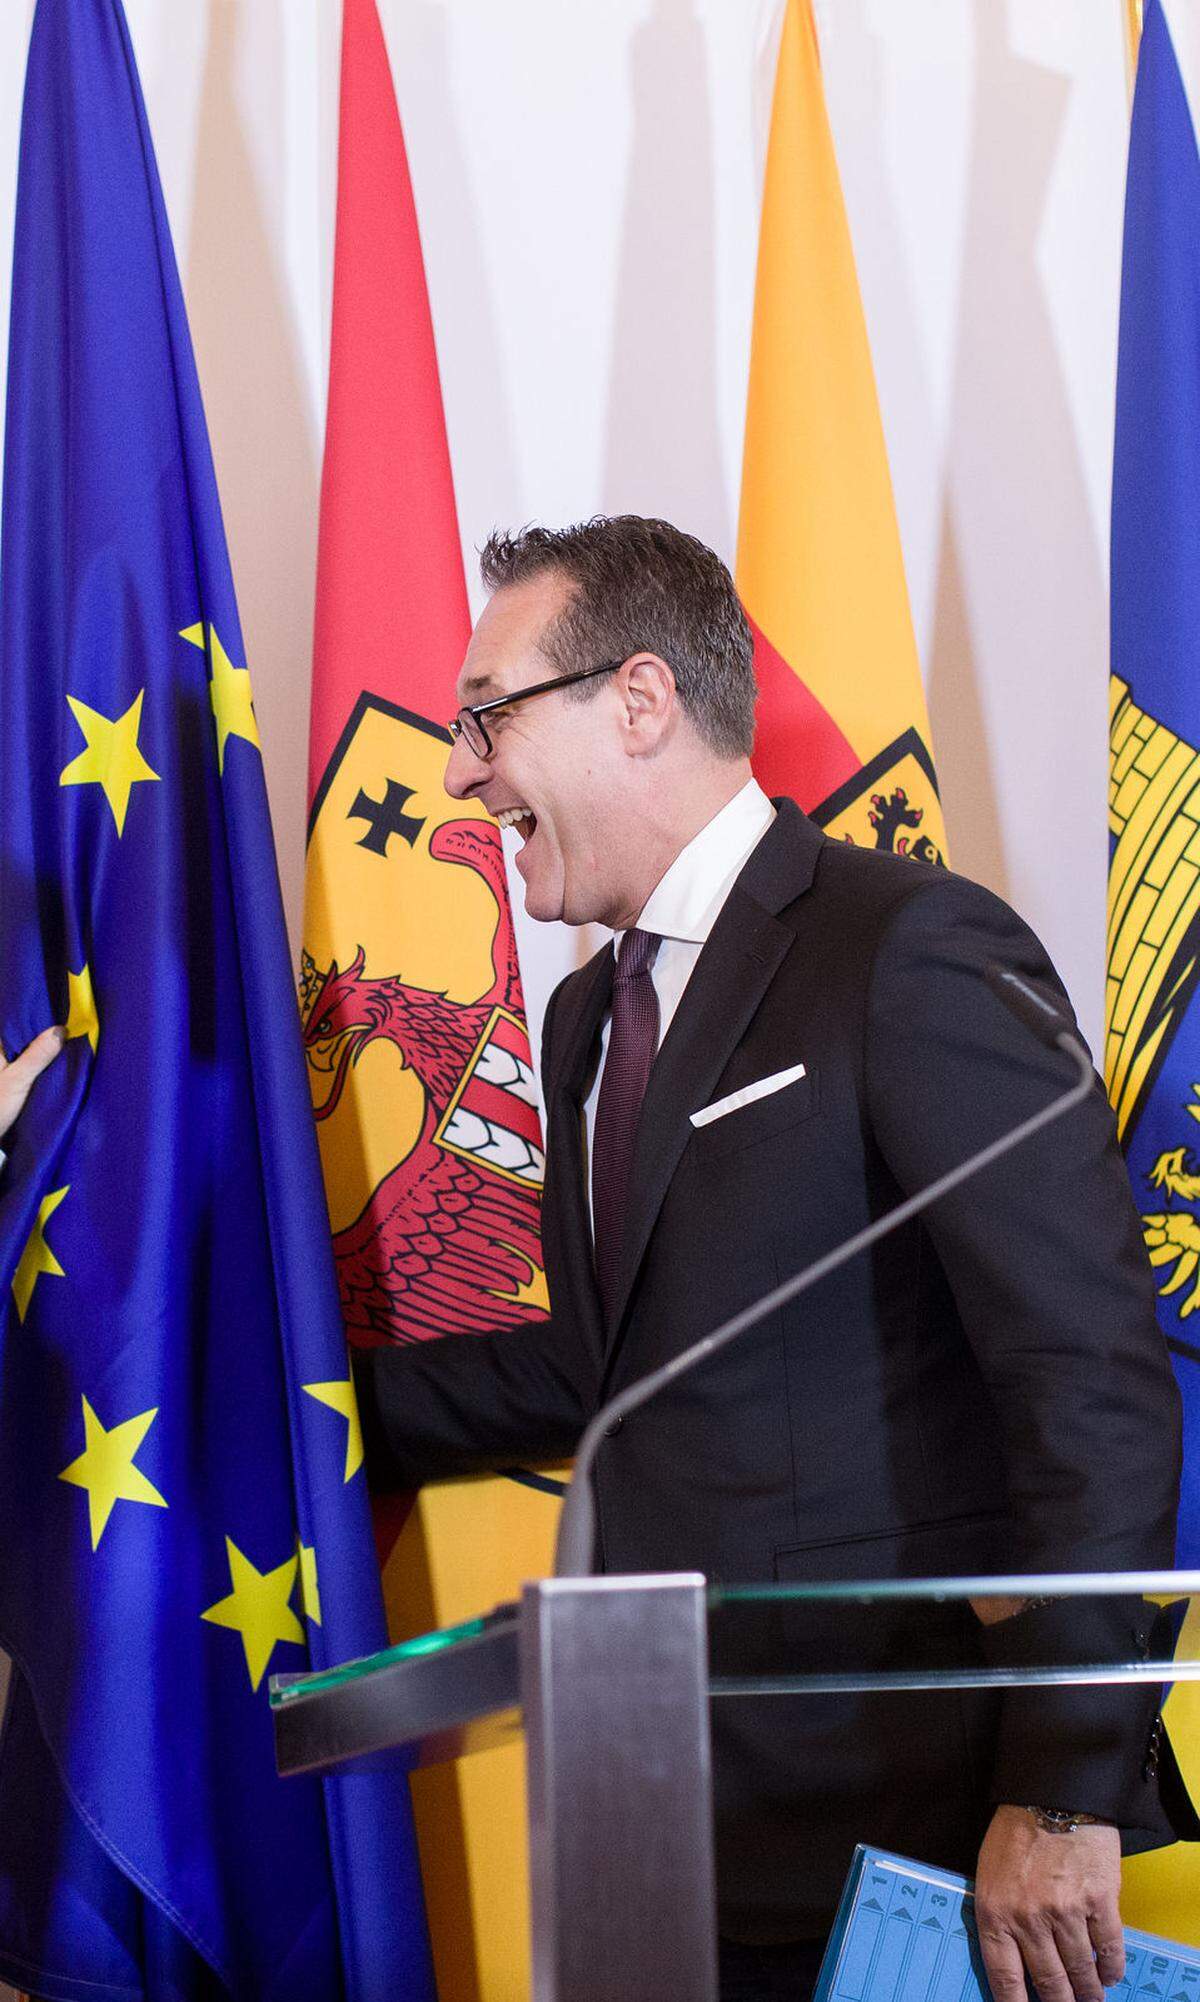 "Ich habe heute die EU gerettet und aufgefangen." FPÖ-Chef Heinz-Christian Strache hob eine fallende EU-Flagge auf.